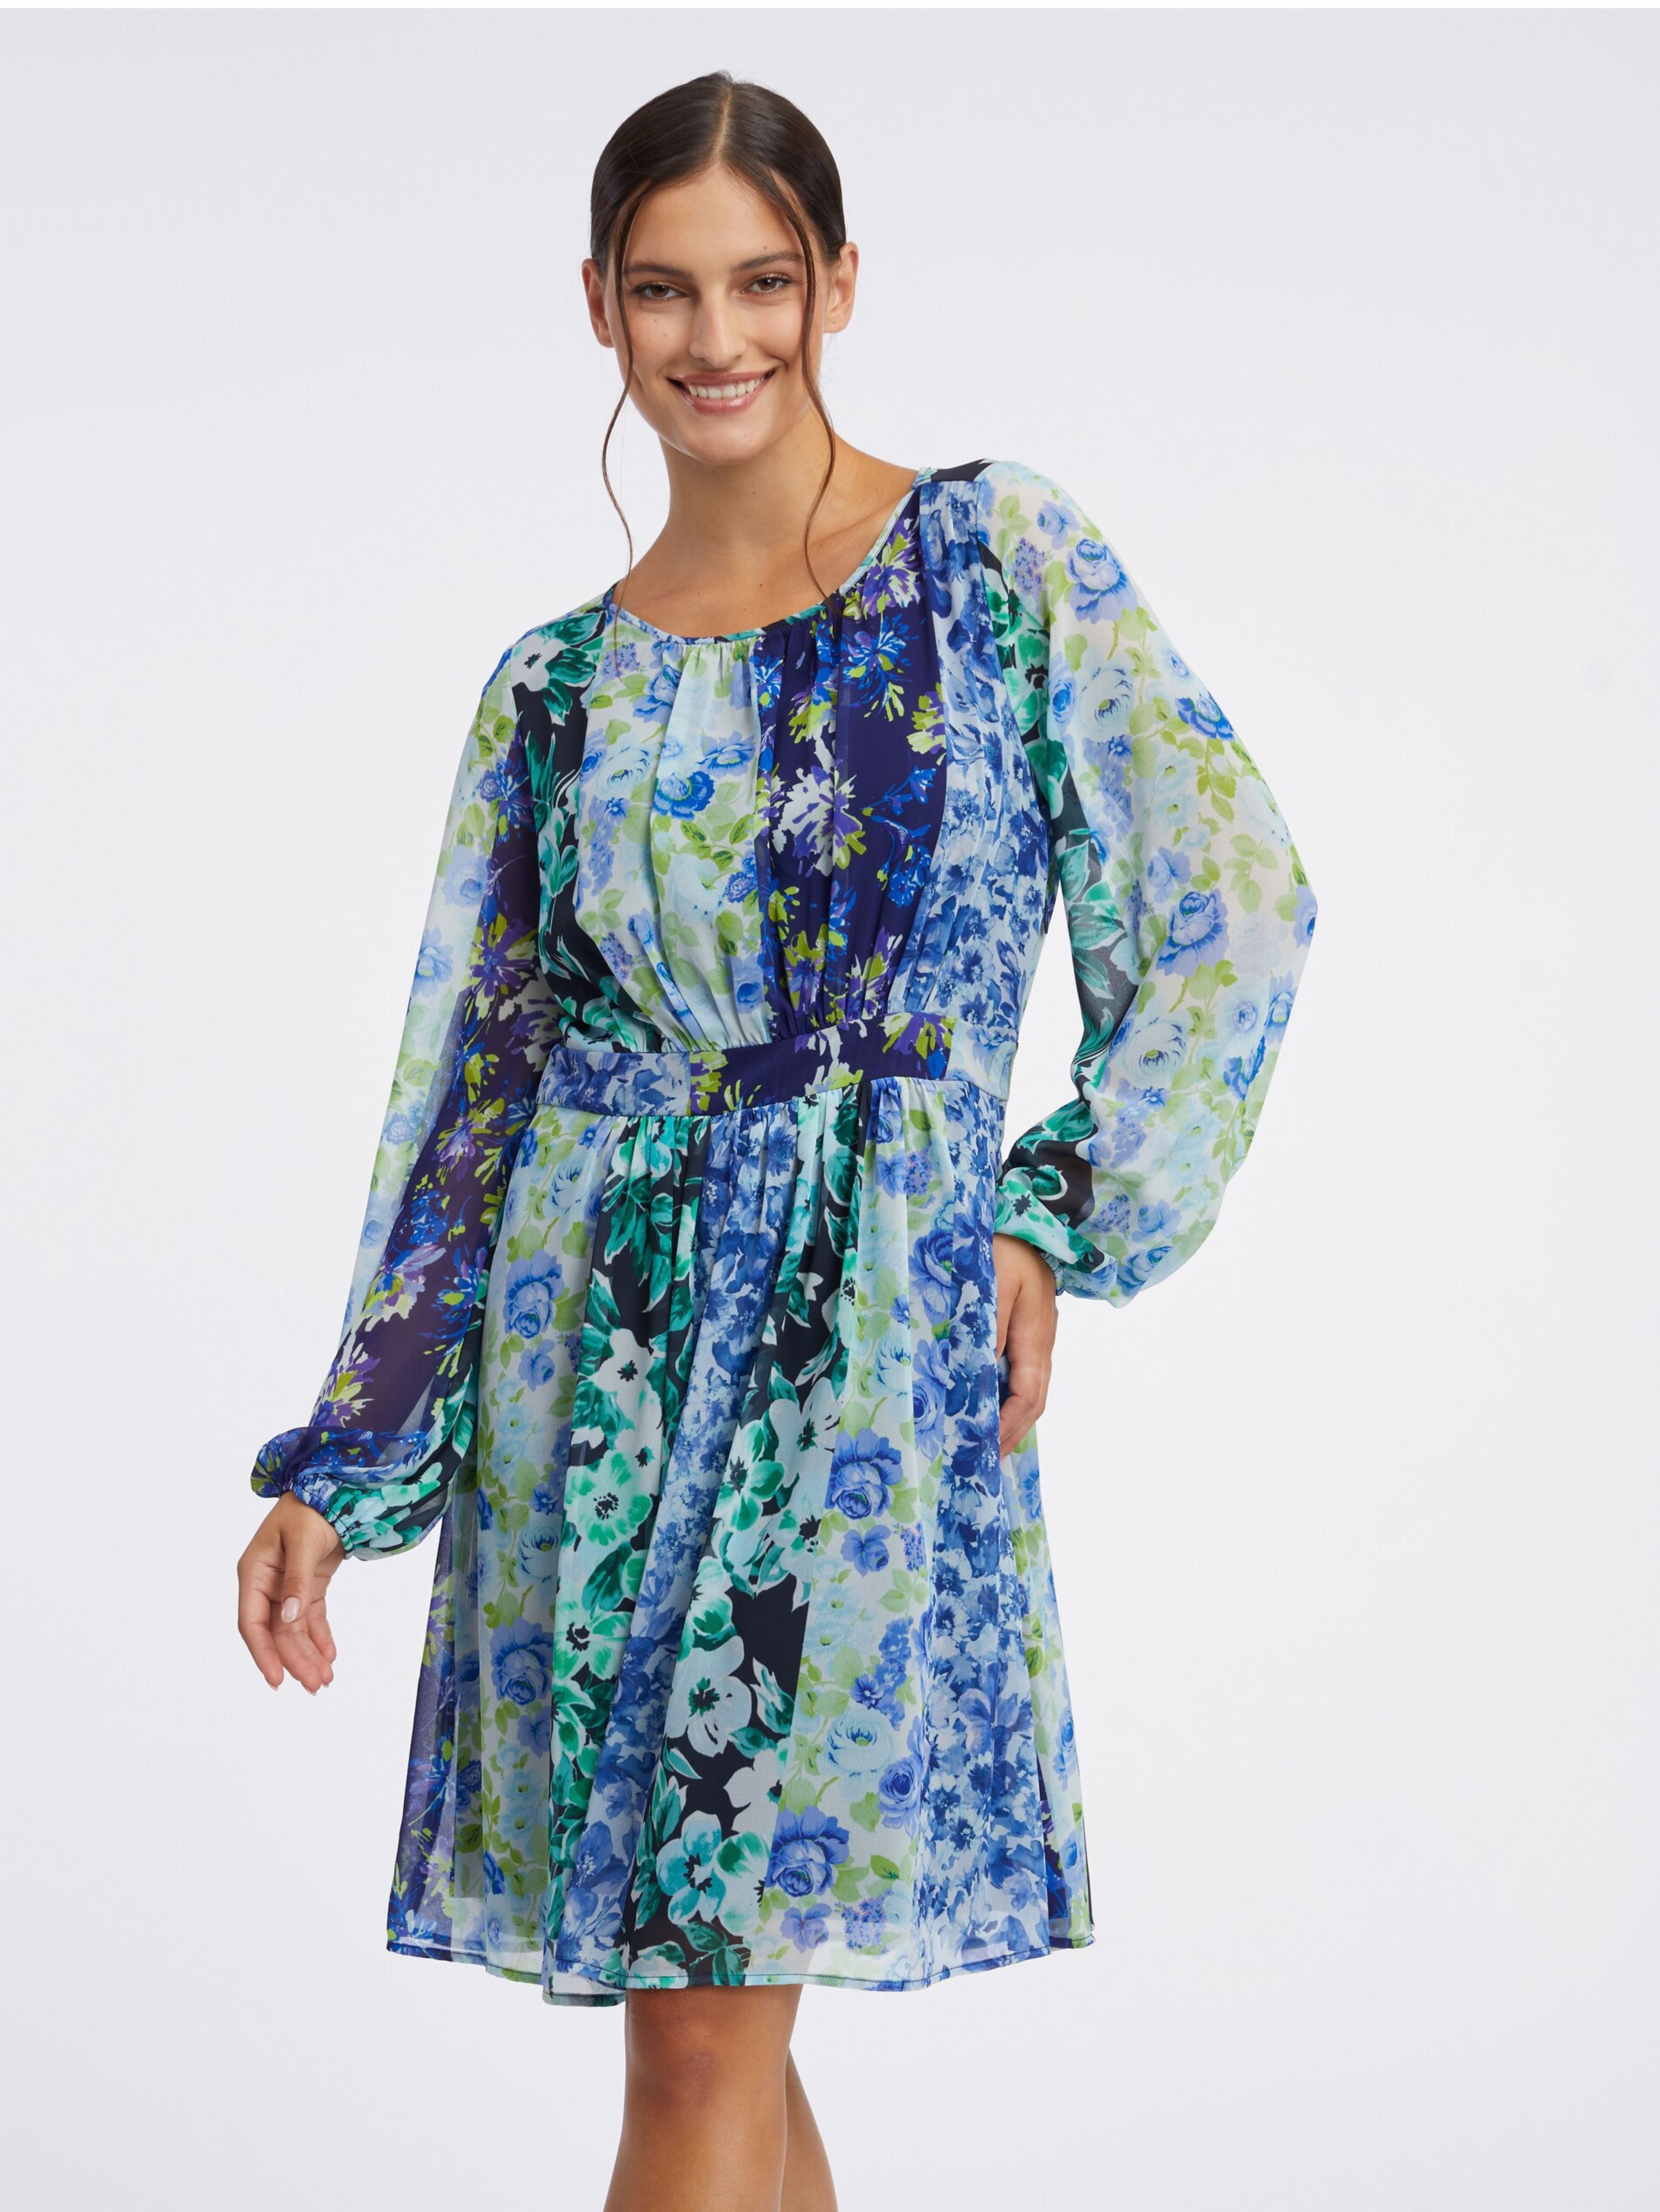 Modré dámské květované šaty ORSAY